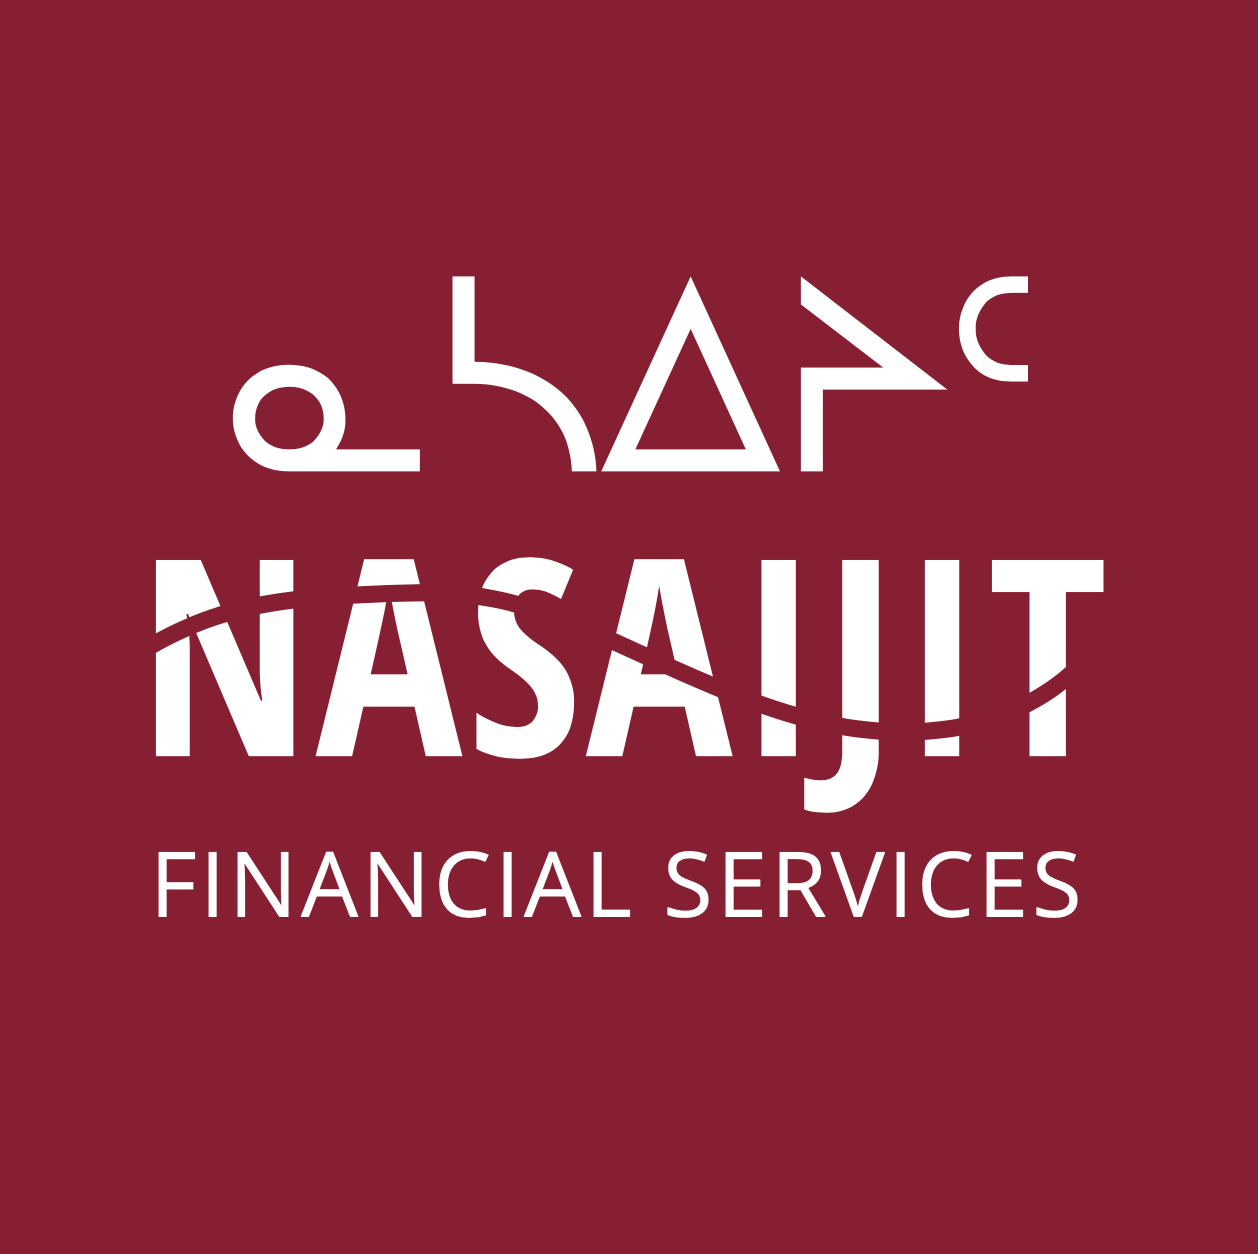 Financial services logo design